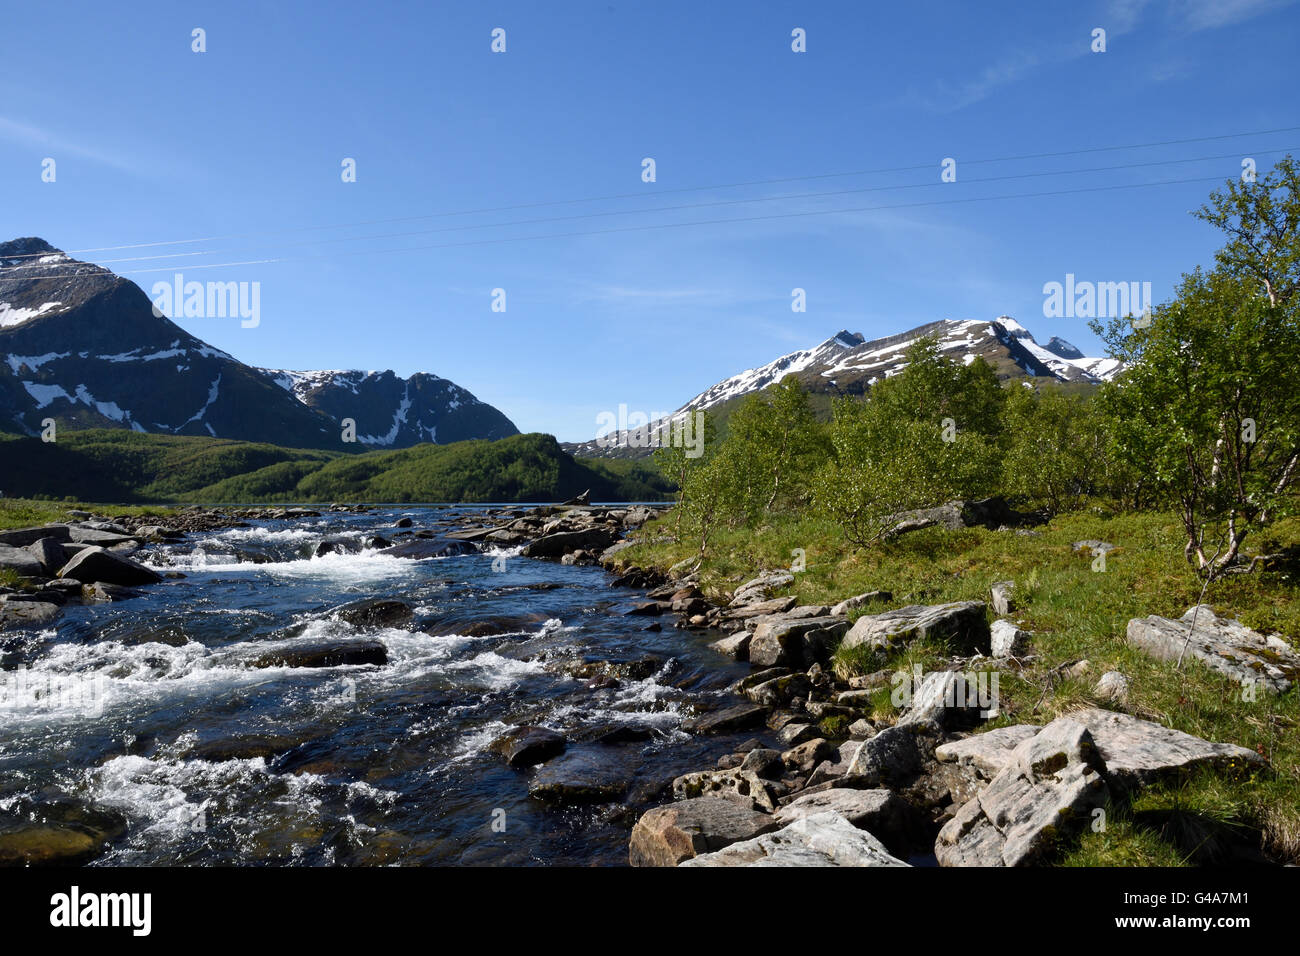 Peu de flux avec les montagnes enneigées en arrière-plan, photo du nord de la Norvège. Banque D'Images